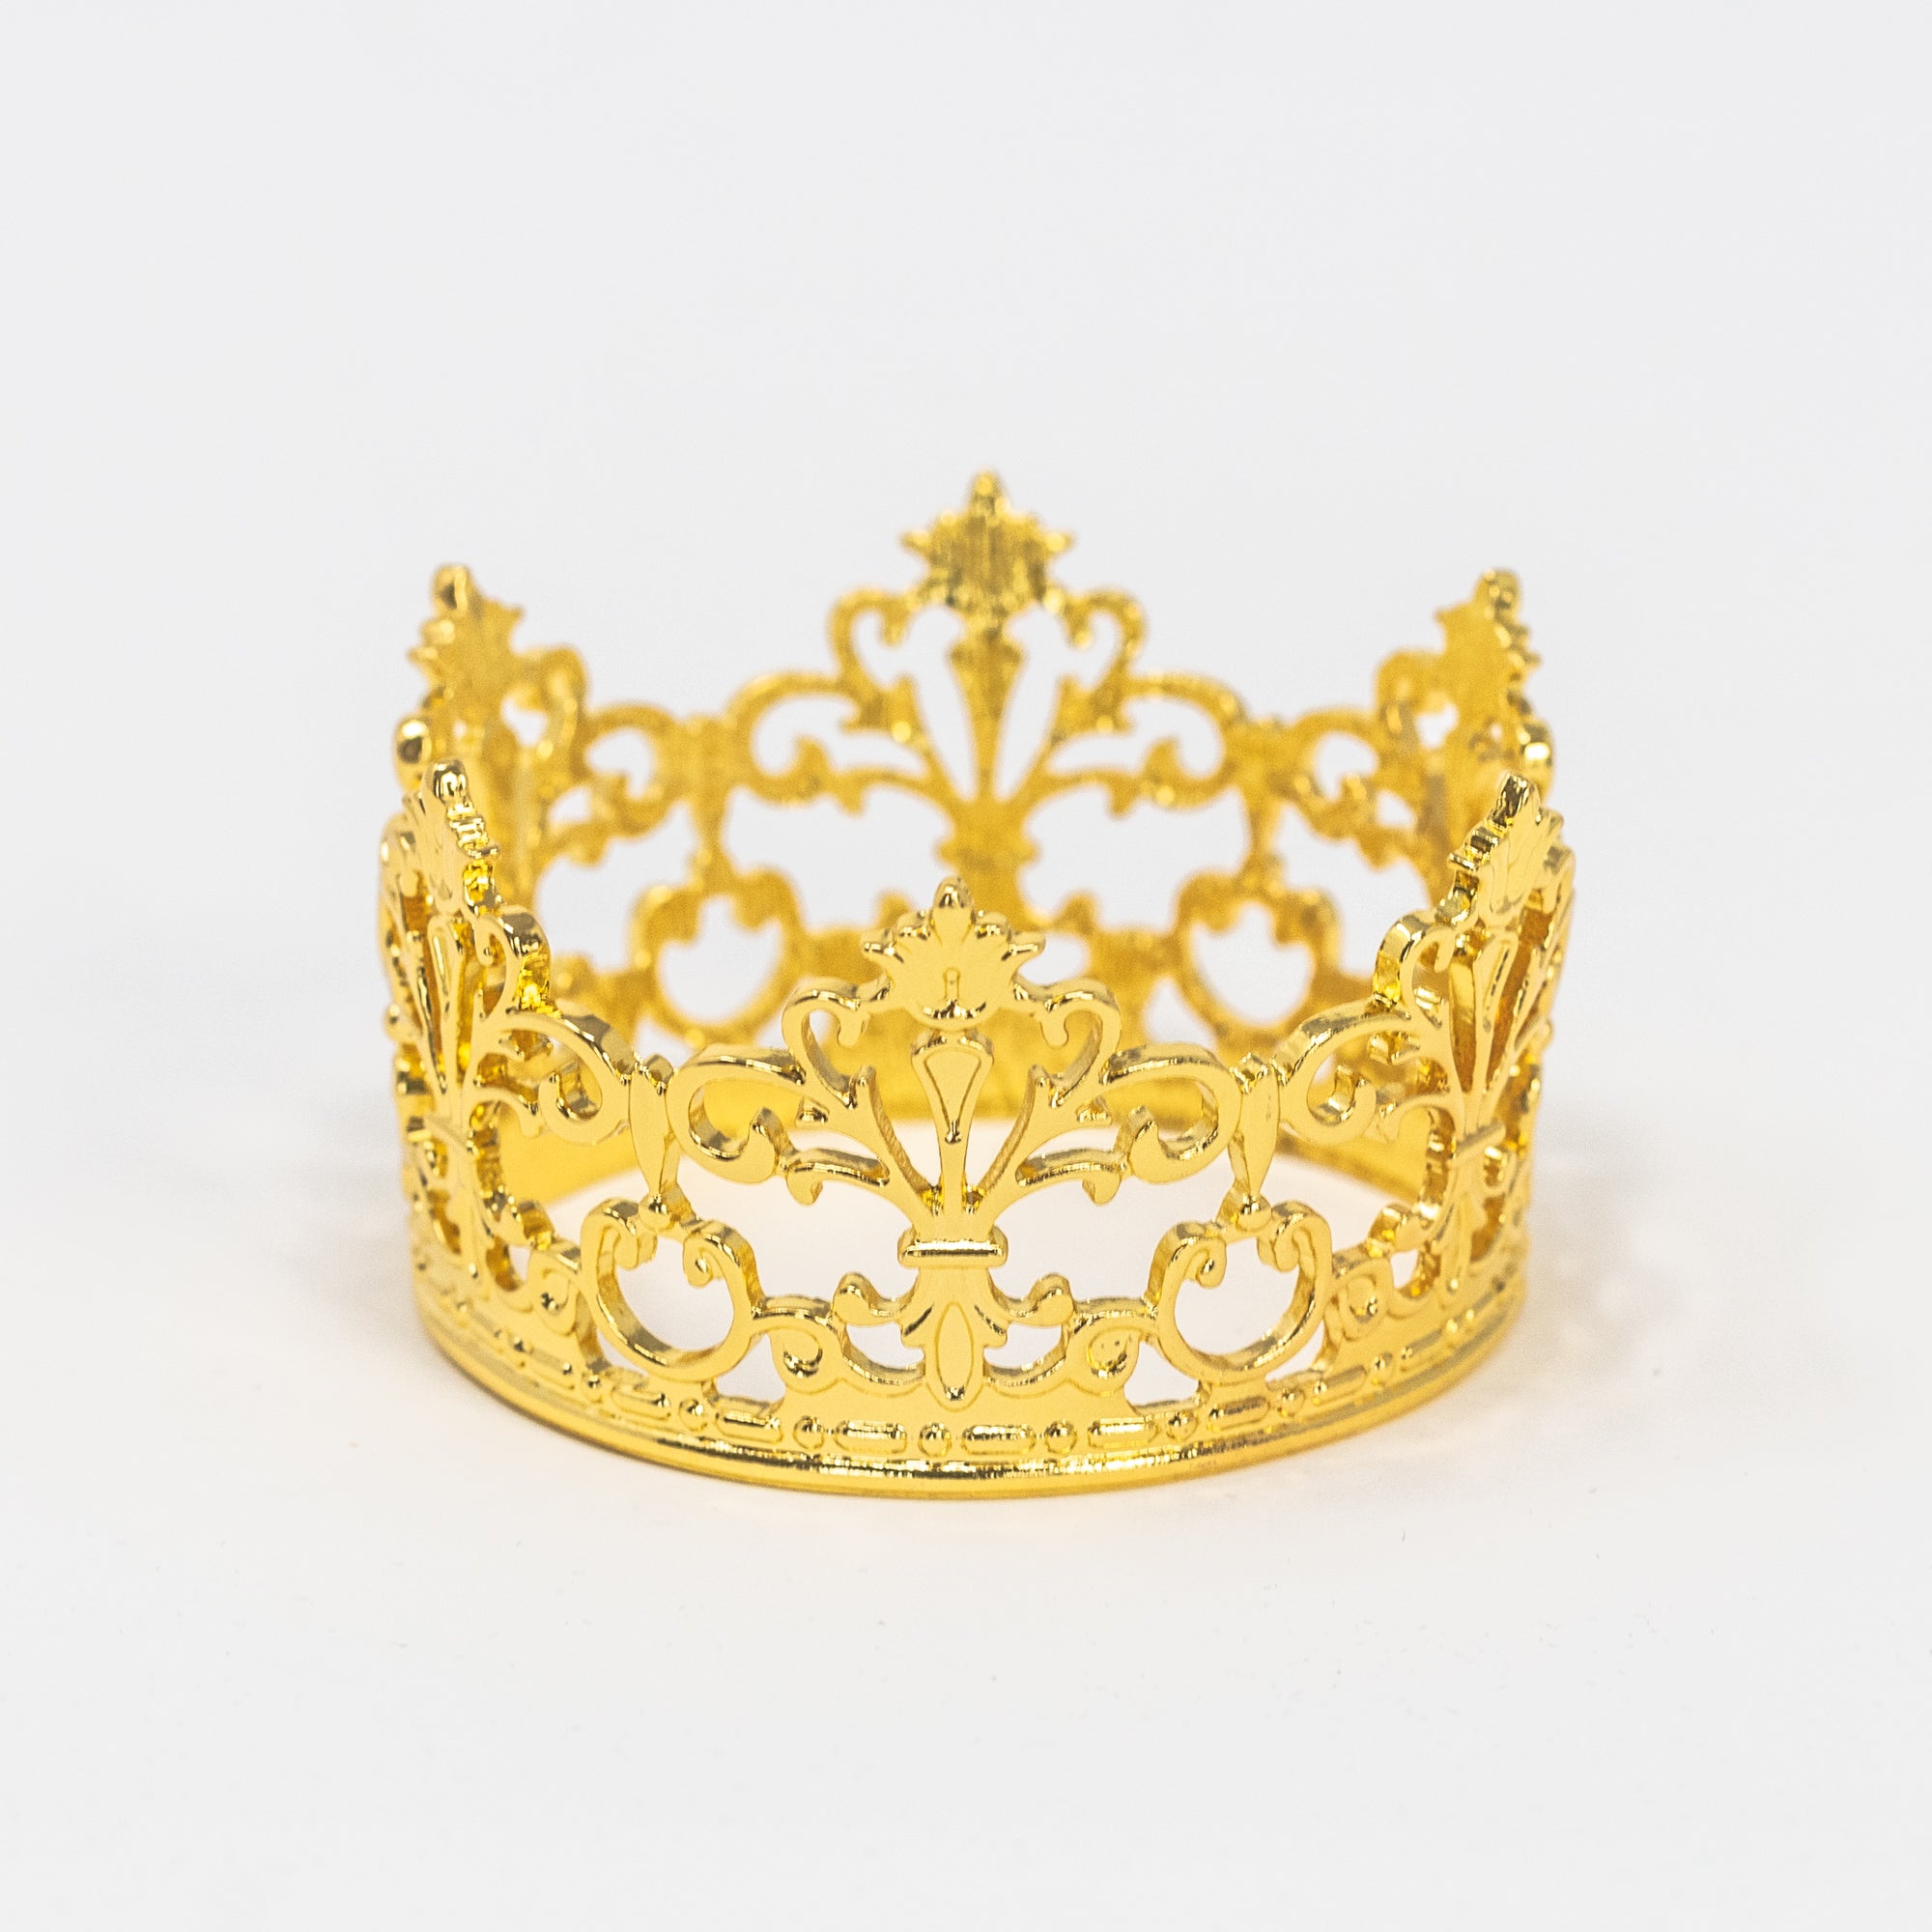 Gold Mini Olde World Tiara Crown with Ribbon - TOPS Malibu